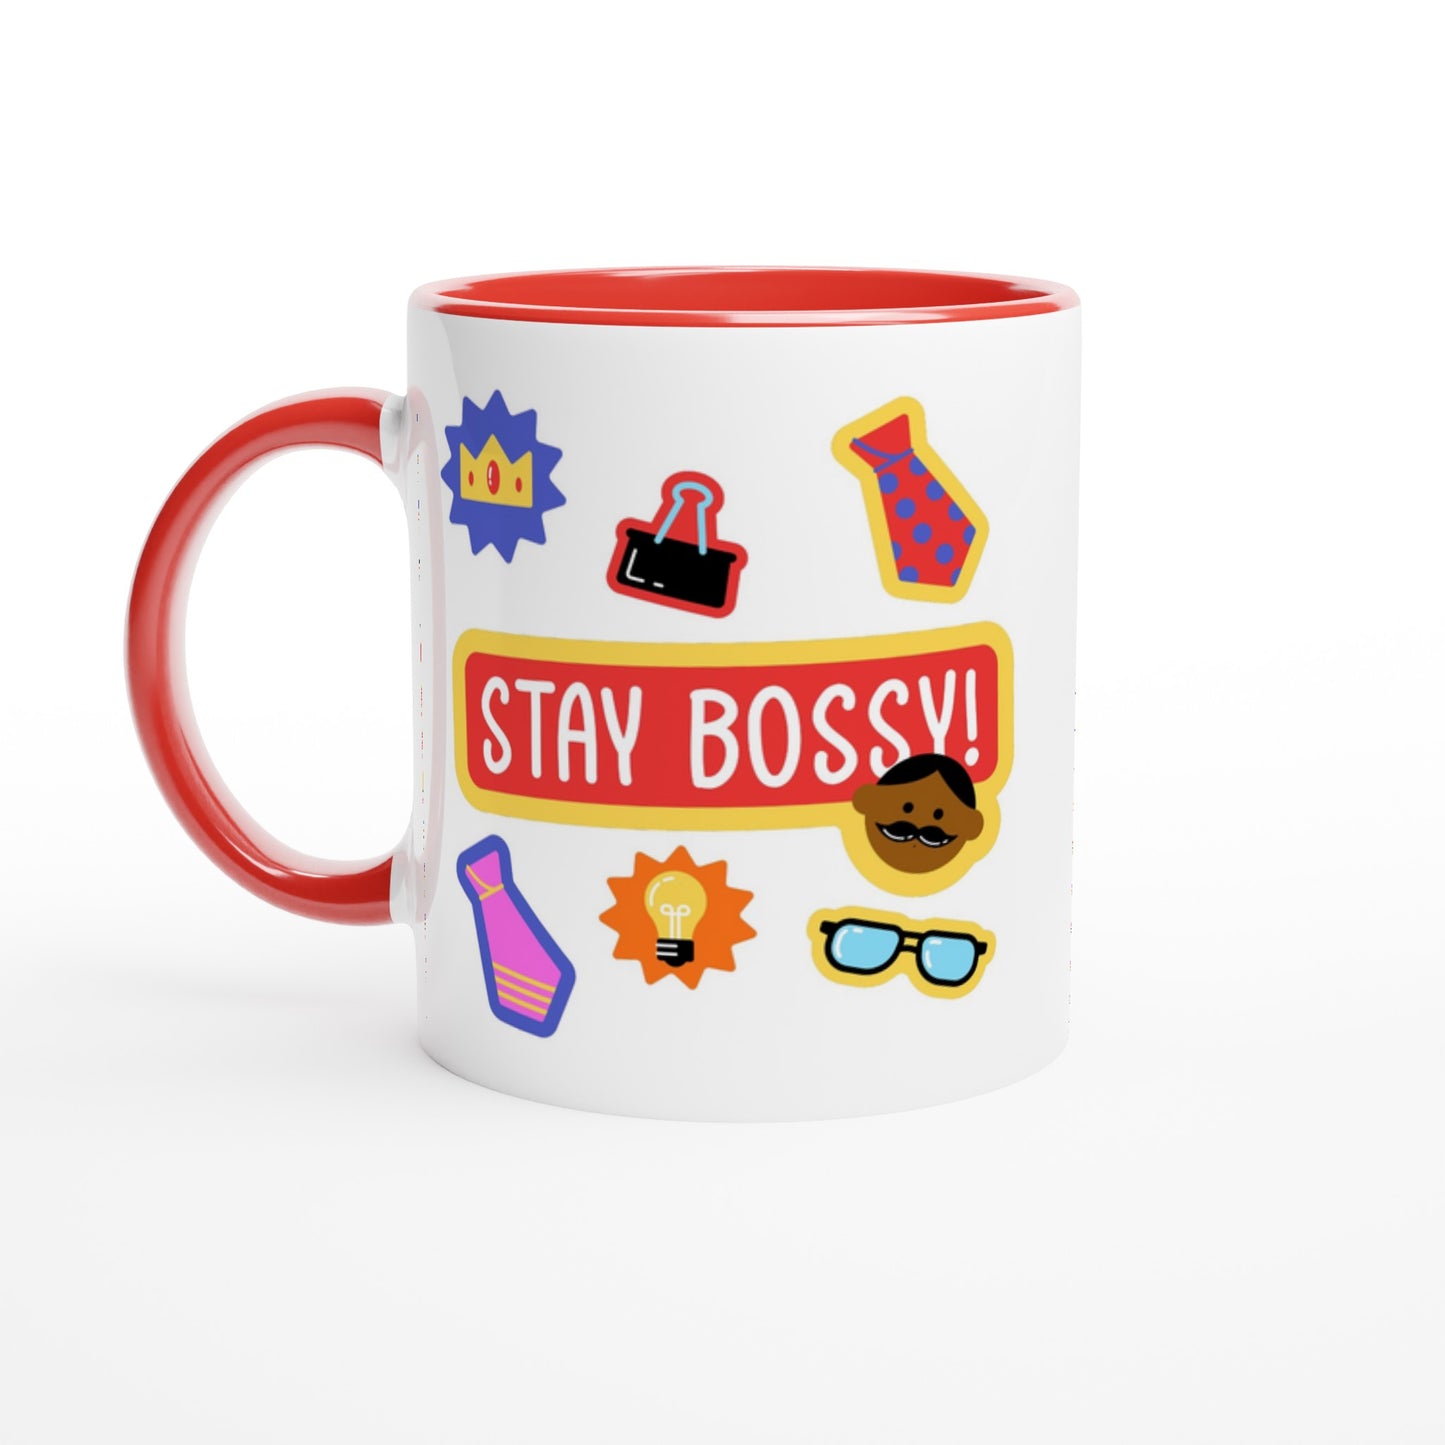 Stay Bossy, Boss Mug - White 11oz Ceramic Mug with Colour Inside Ceramic Red Colour 11oz Mug Funny